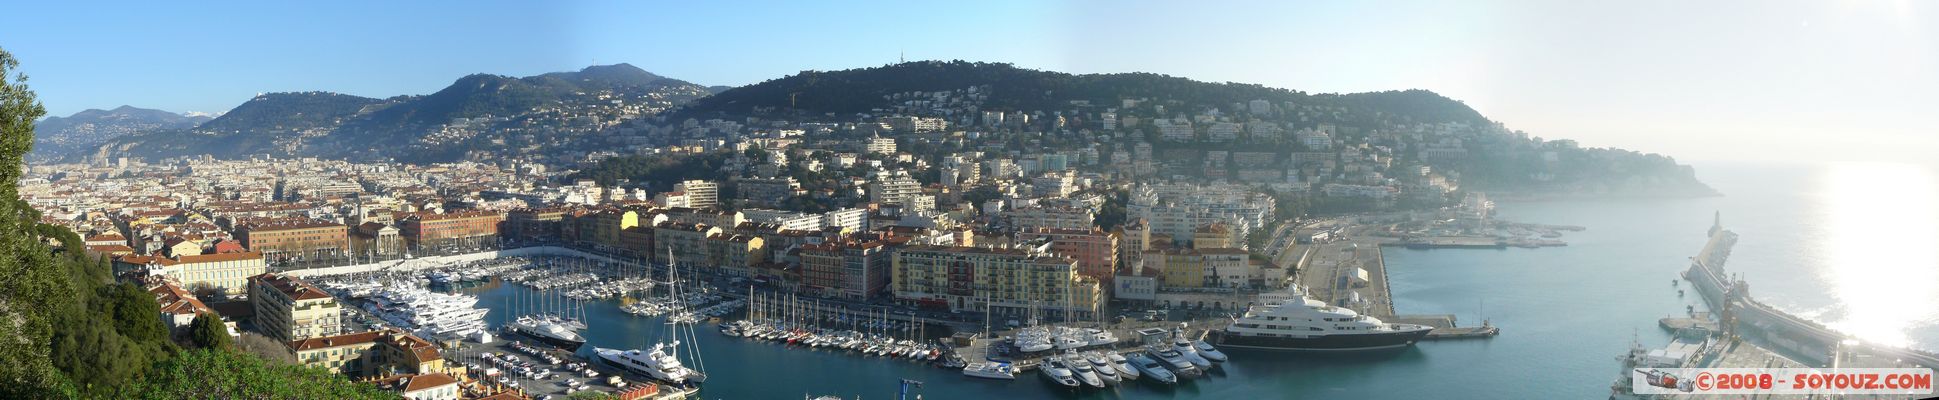 Nice - Le Port - panorama
Mots-clés: panorama Port